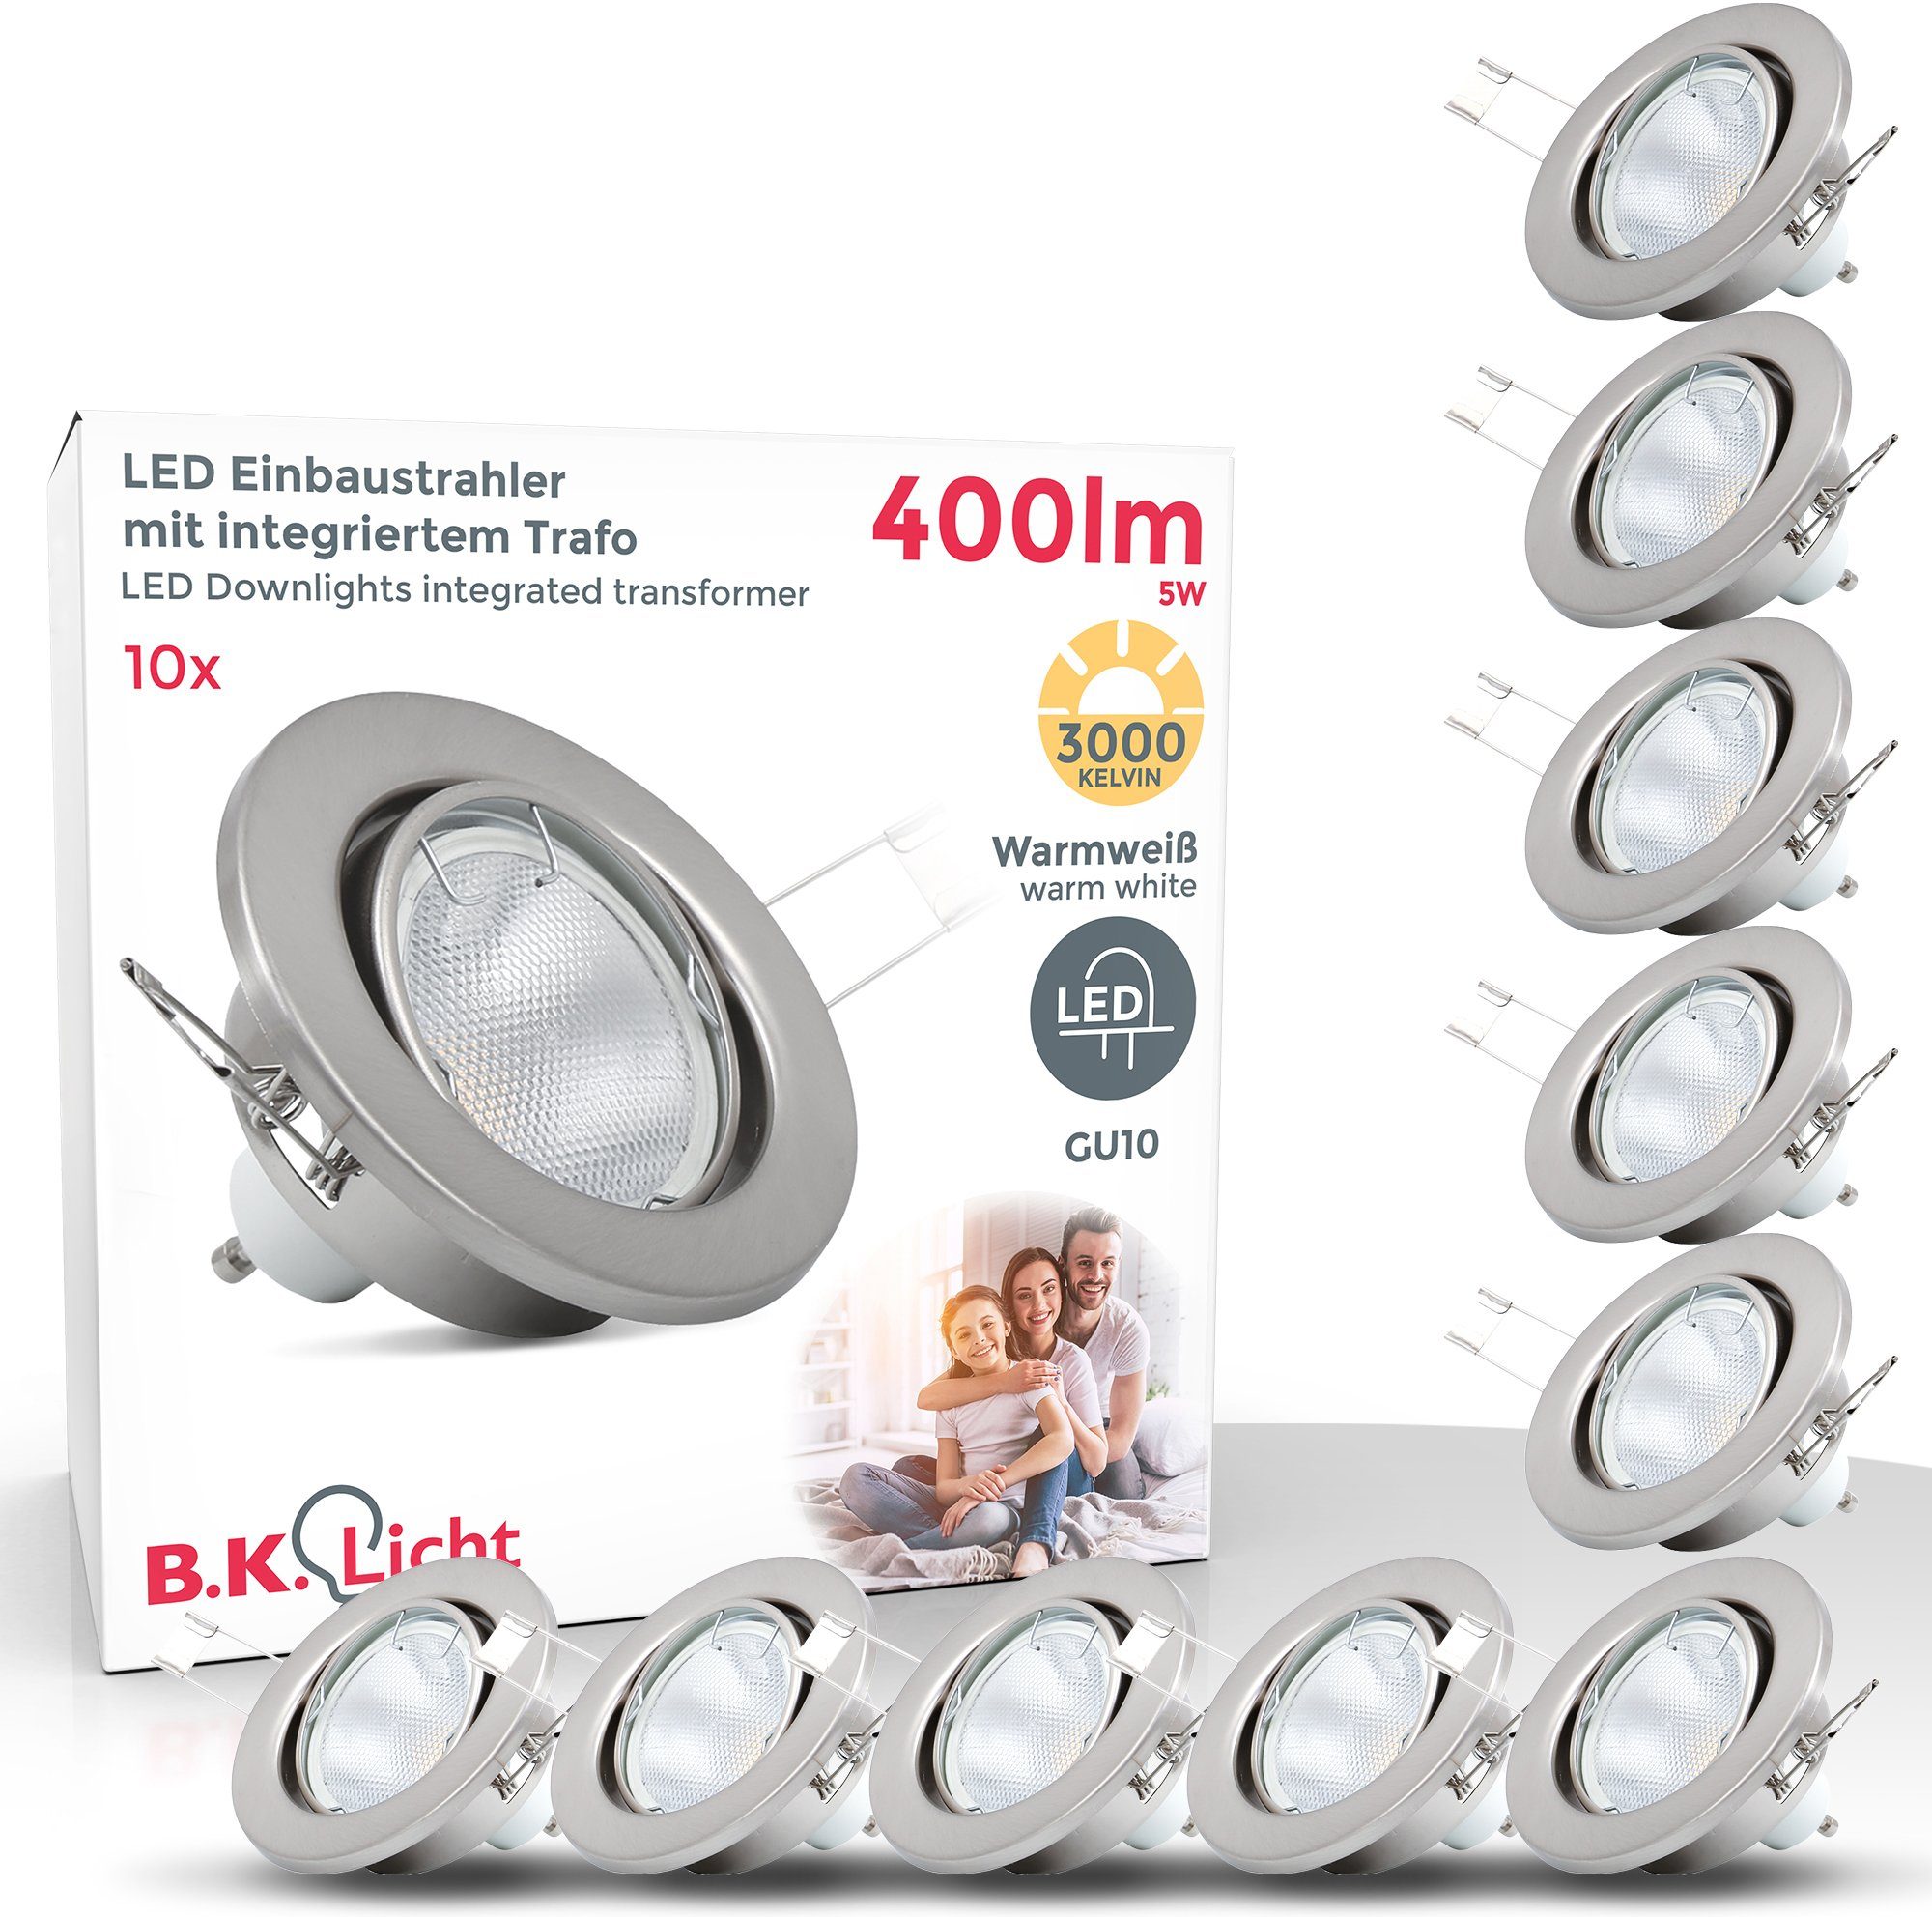 GU10 Einbauleuchten, Warmweiß, LED matt B.K.Licht wechselbar, Einbau-Spots, LED Einbaustrahler, schwenkbar, nickel, LED